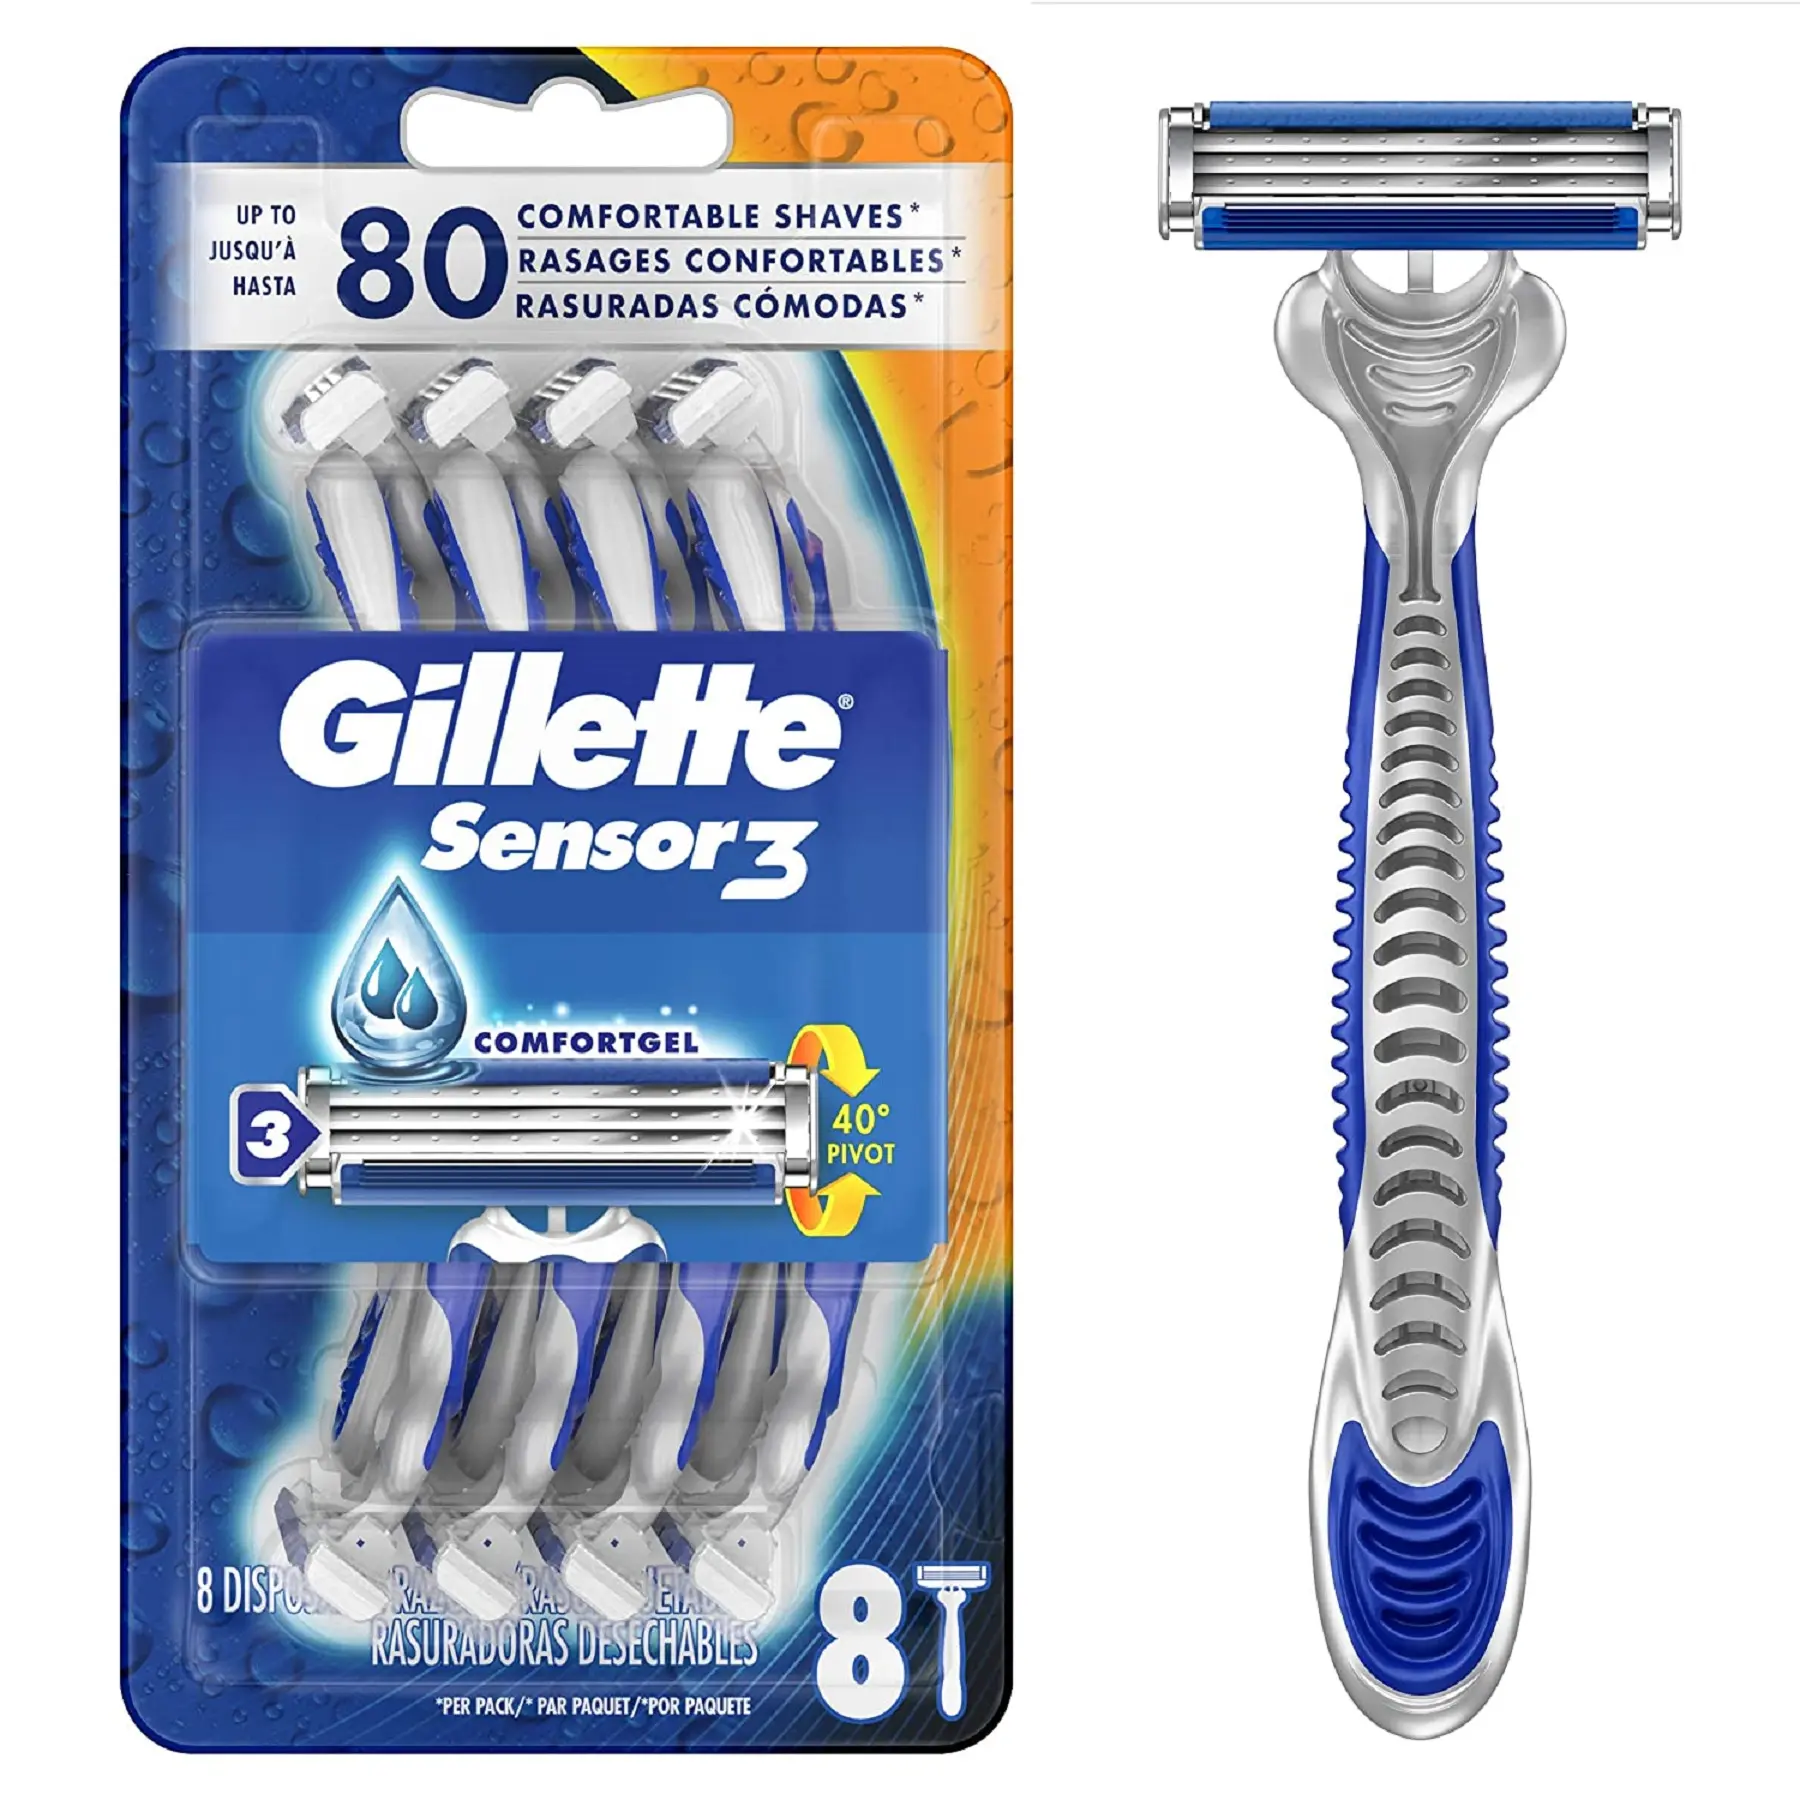 Gillette Mach3/Gillette Shave Einweg-Rasierklingen